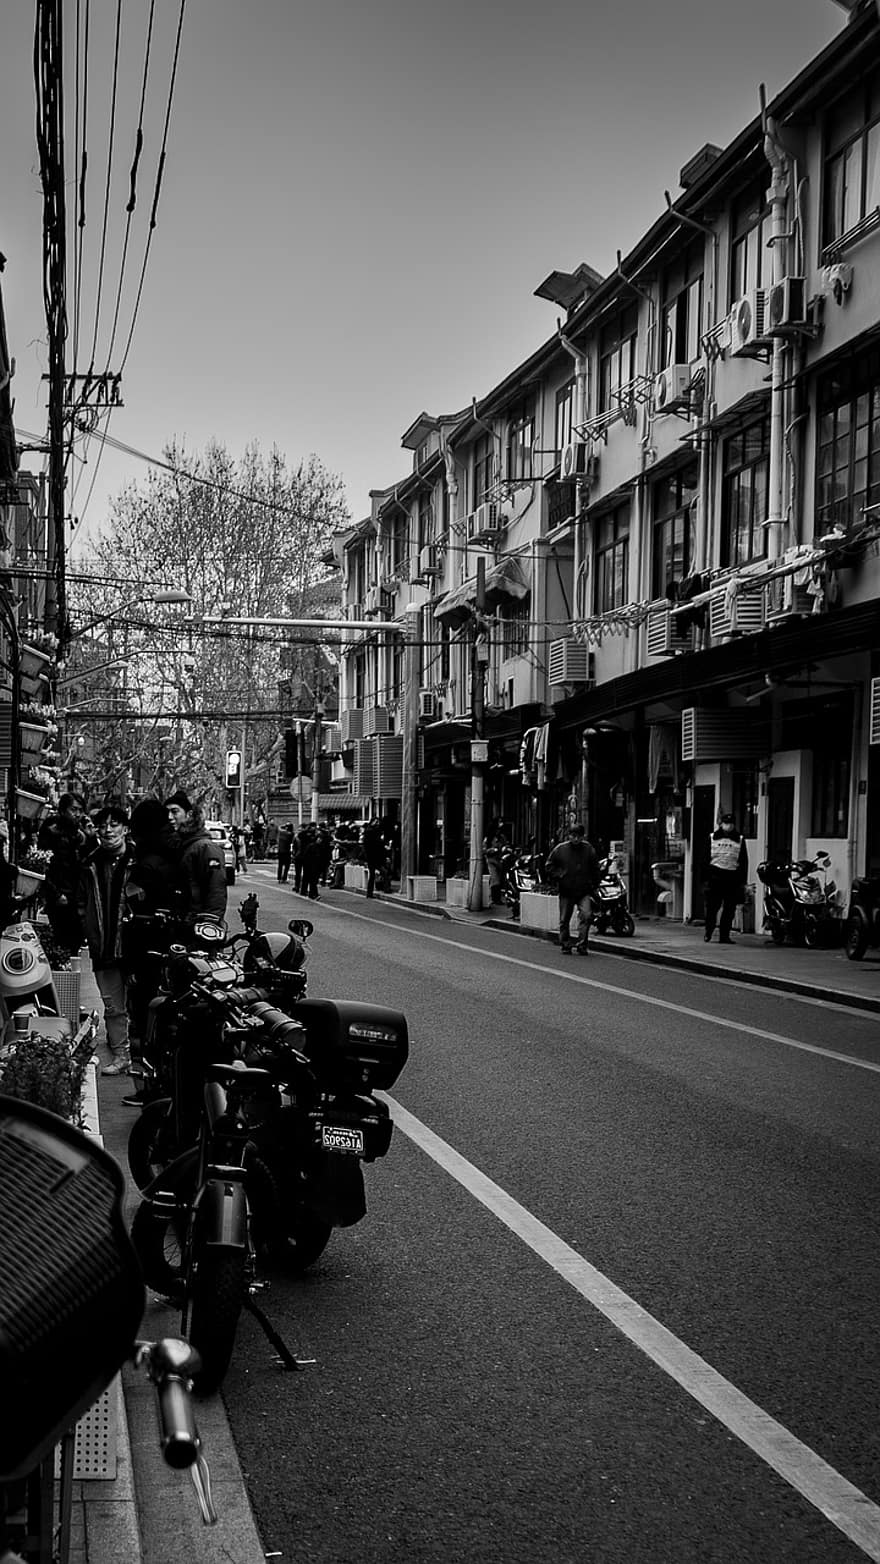 utca, Yongkang út, monokróm, városi, fekete és fehér, városi élet, építészet, forgalom, épület külső, szállítás, utazás